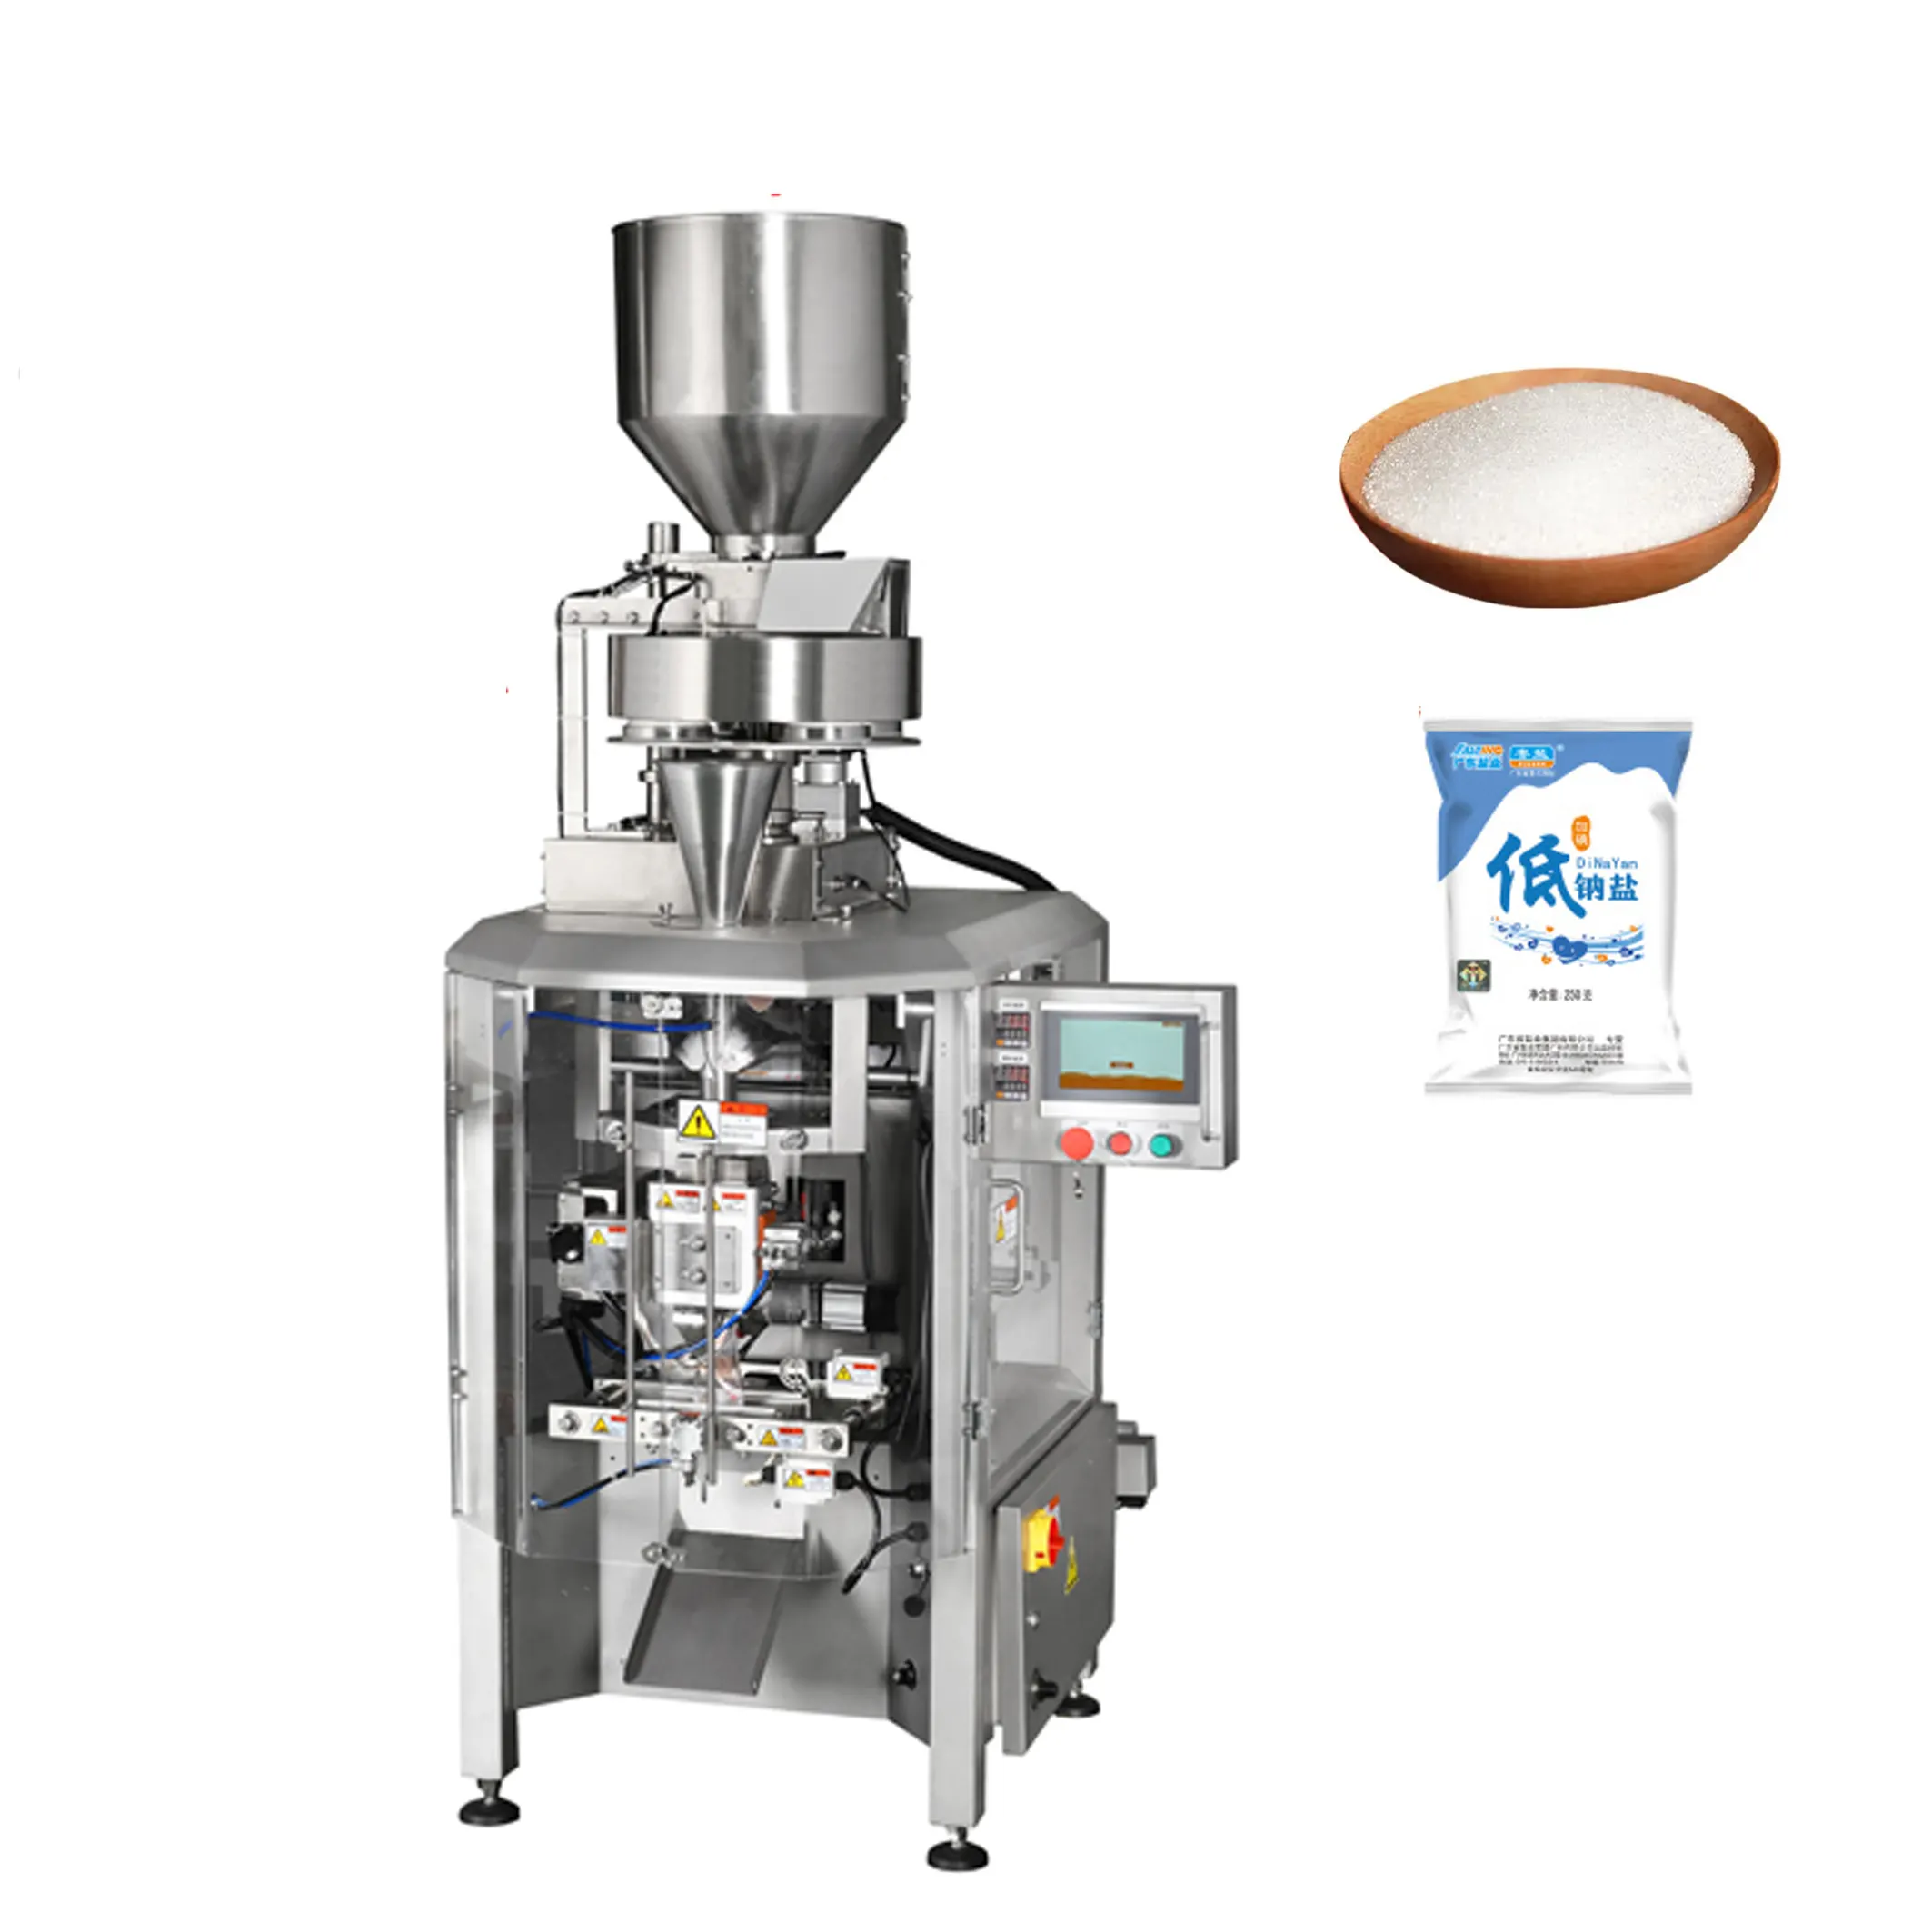 מלח אורז סוכר אוטומטי מכונות אריזה אנכיות קטנות עם מילוי כוס נפחוני